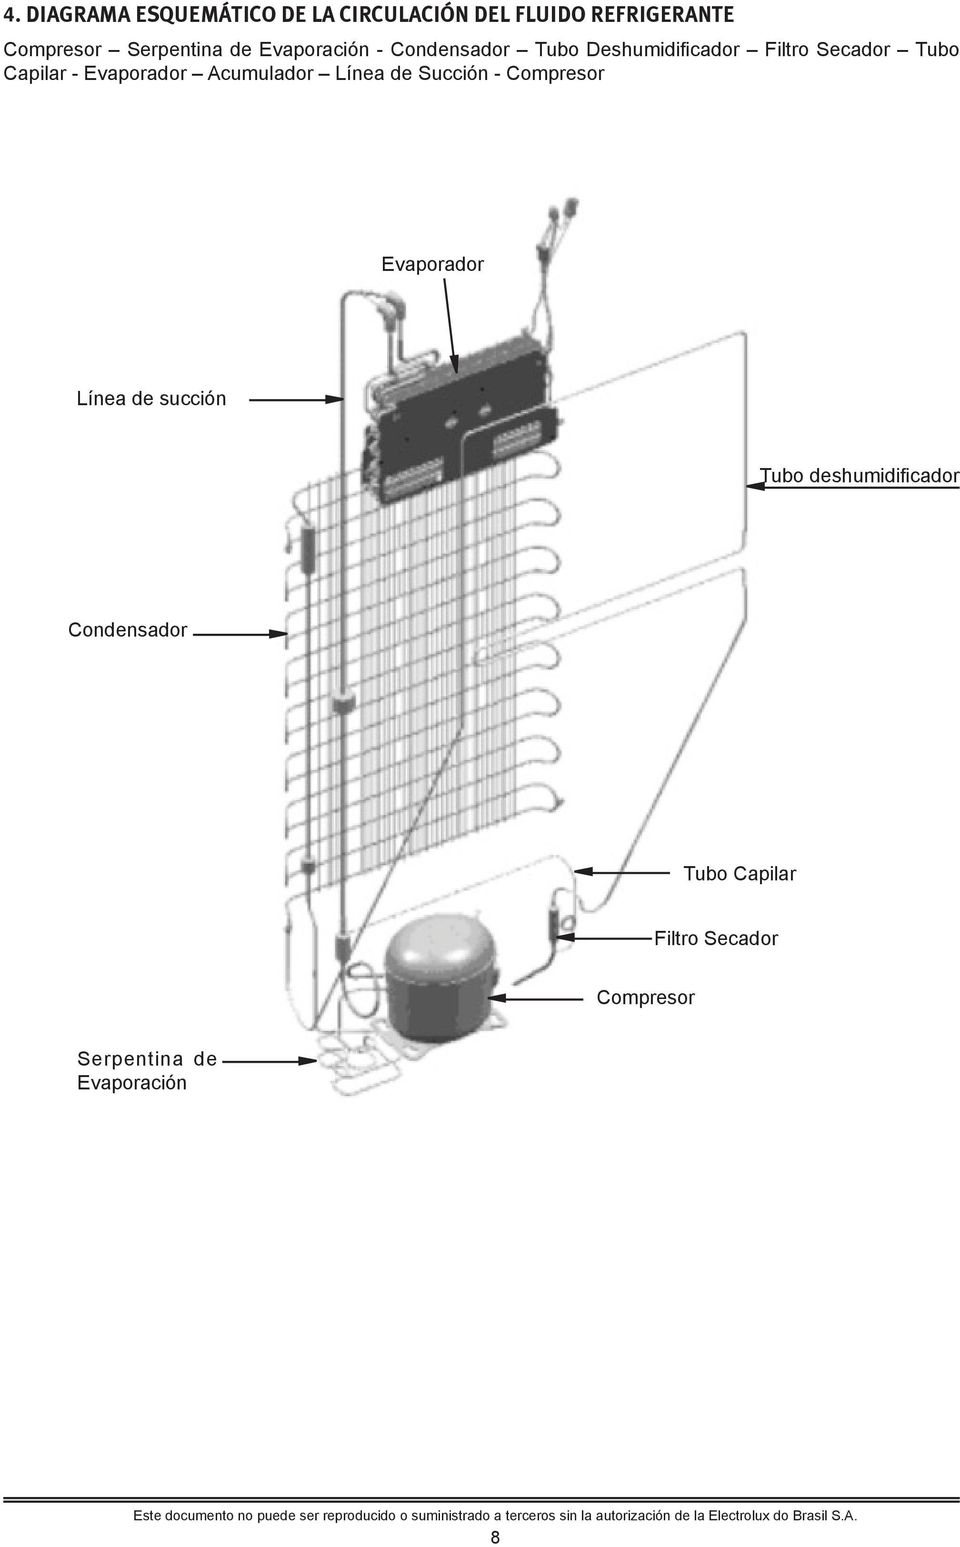 Evaporador Acumulador Línea de Succión - Compresor Evaporador Línea de succión Tubo